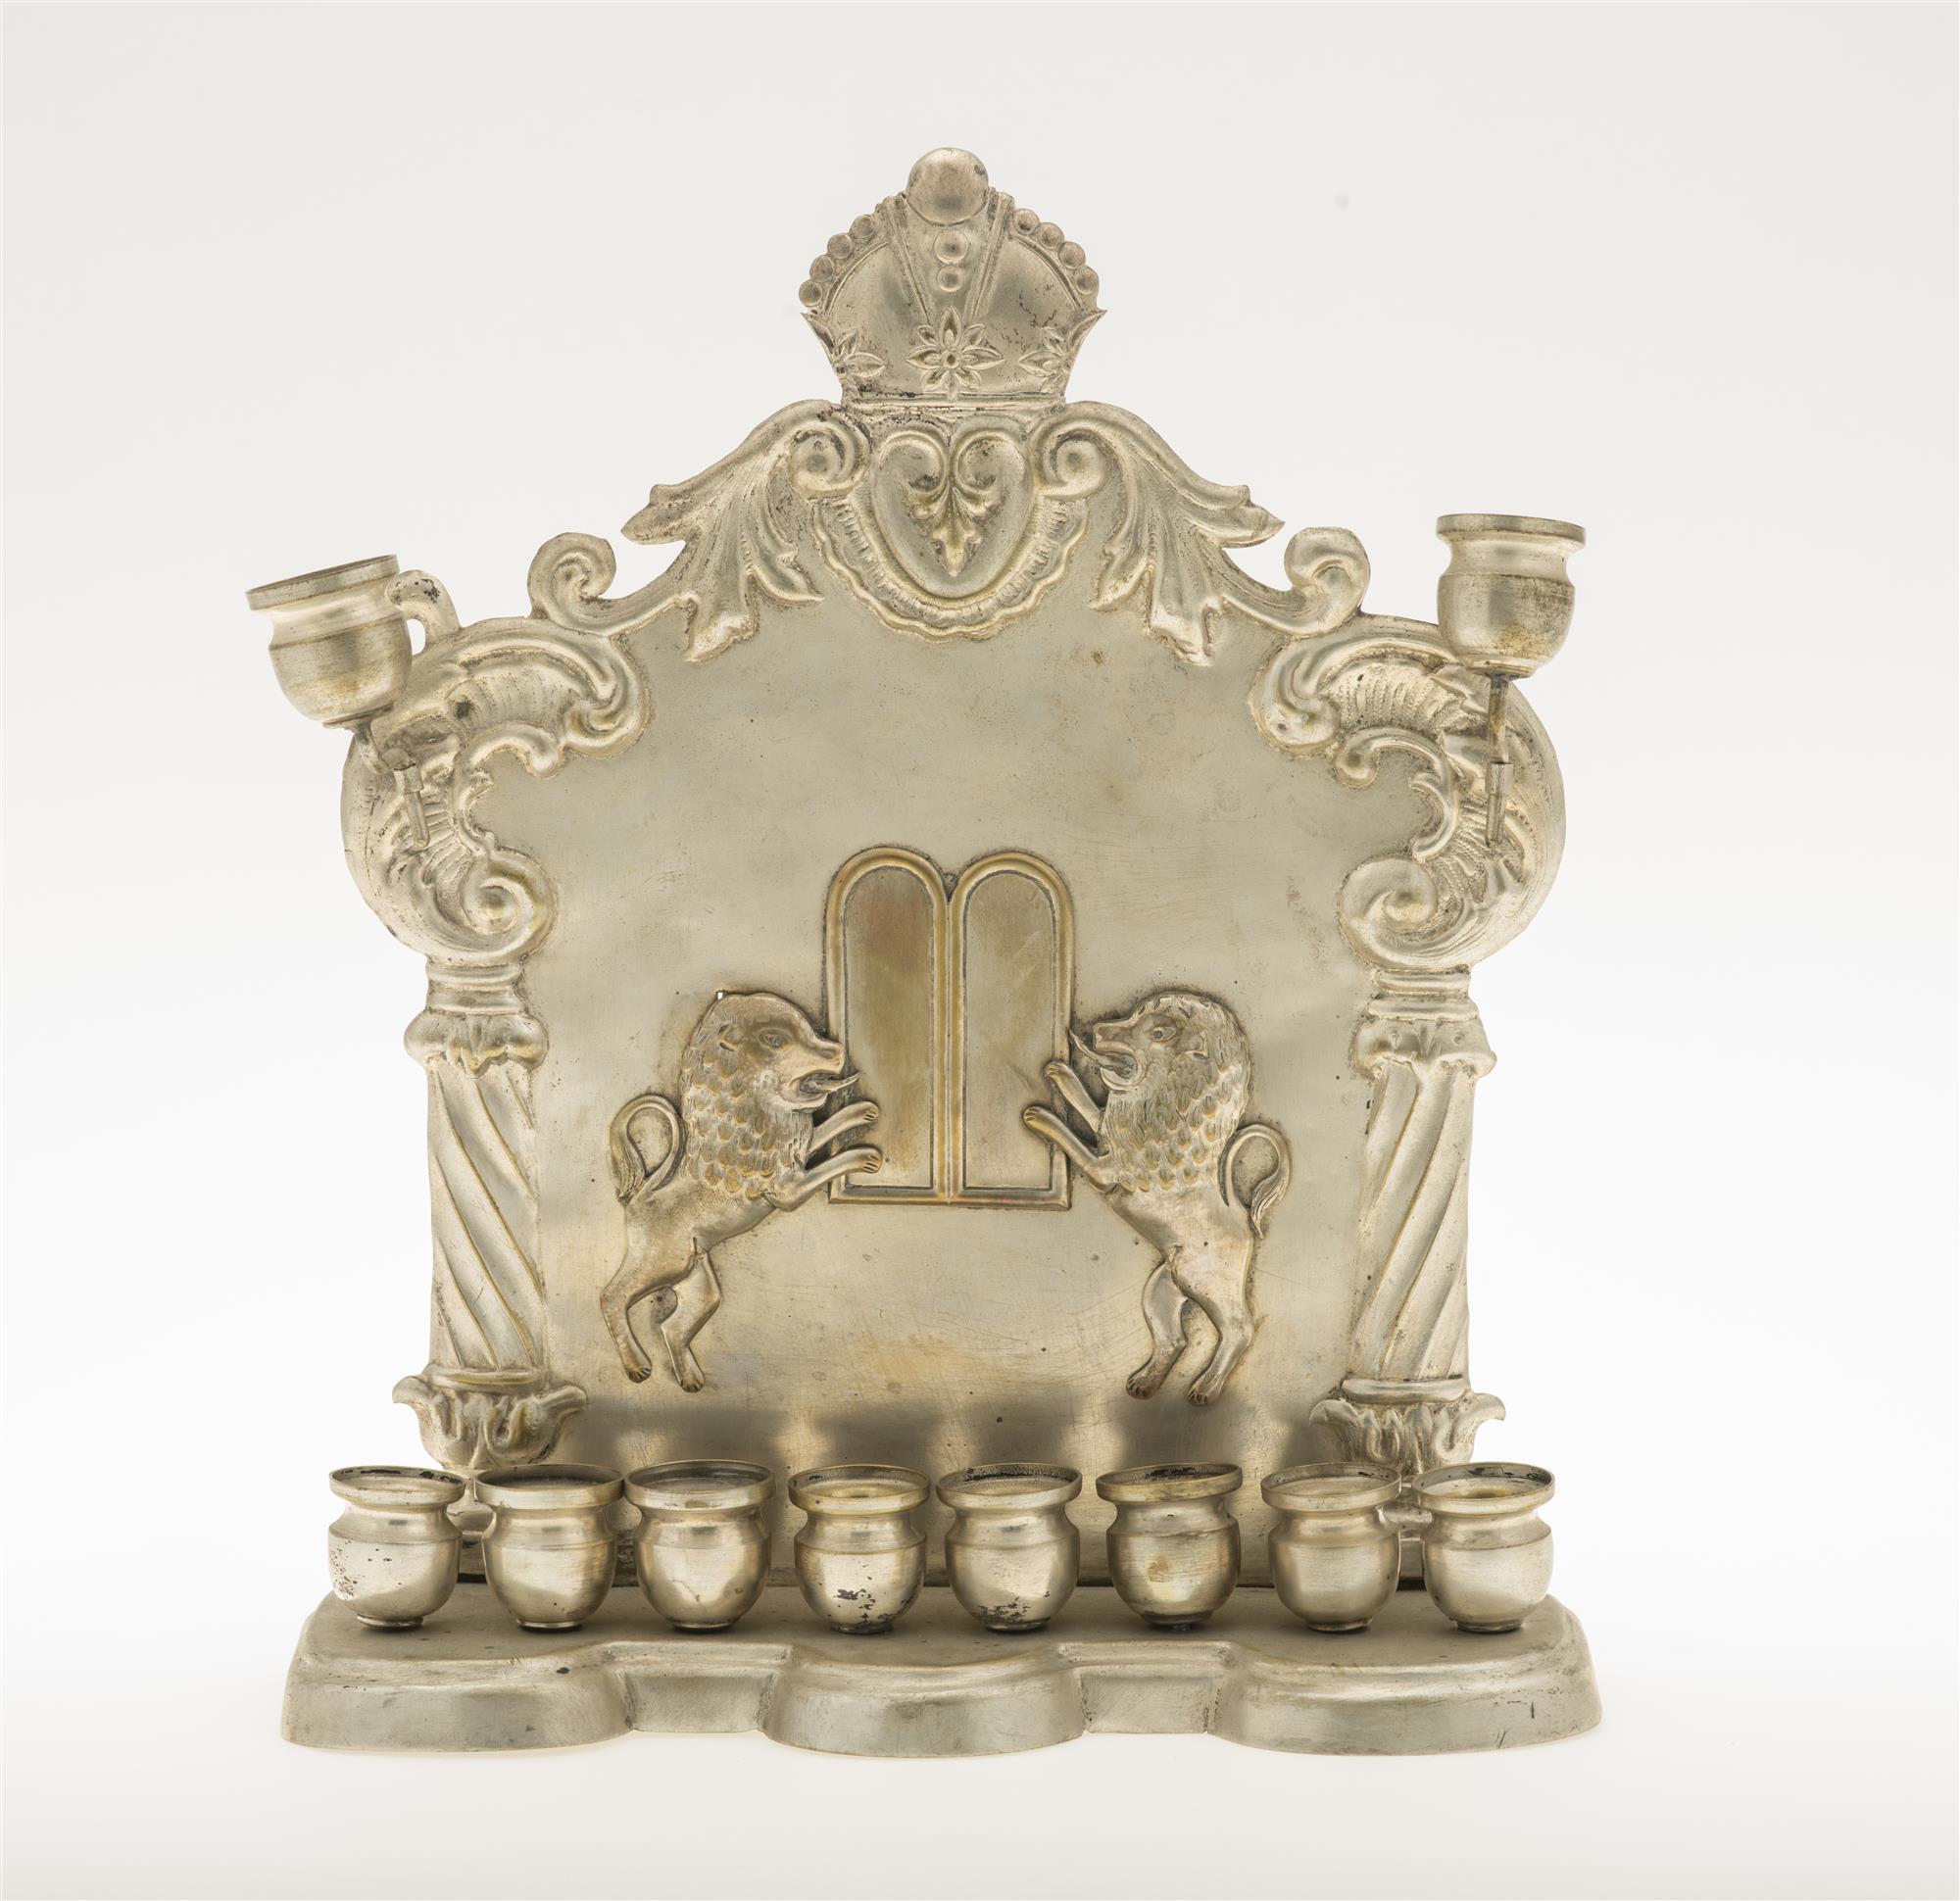 Lampka chanukowa, wykonana z mosiądzu srebrzonego, autor nieznany, XIX wiek, Muzeum-Zamek w Łańcucie, licencja PD,  źródło: Centralna Baza Judaików